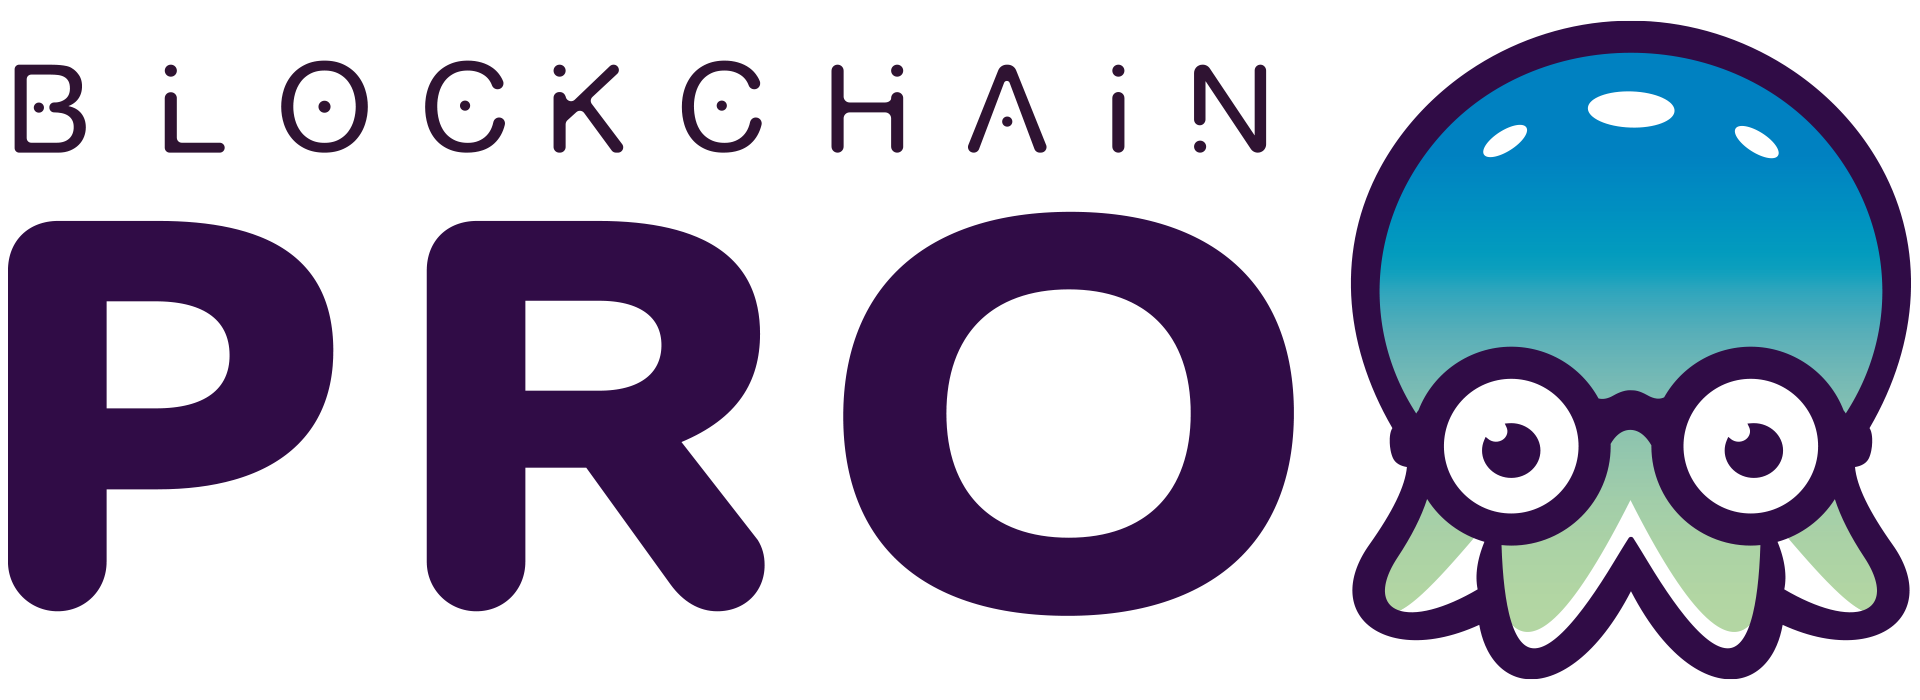 Blockchain pro